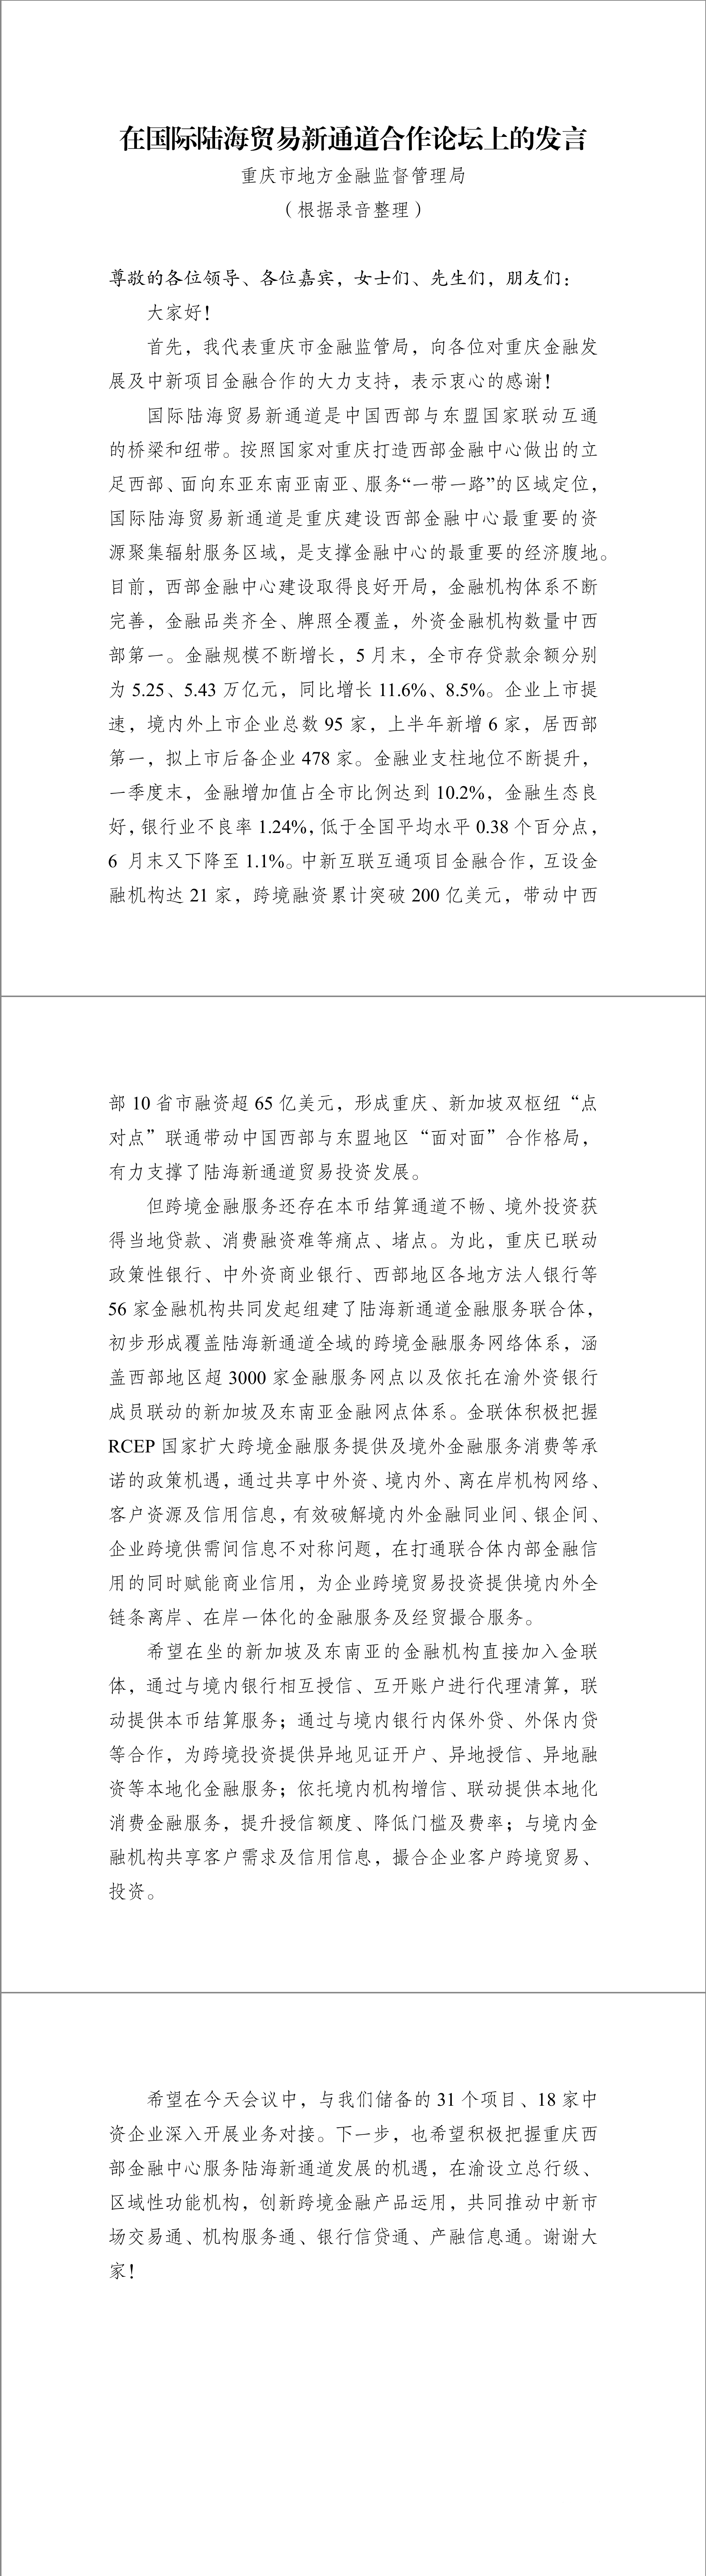 2-重庆市金融监管局发言.png